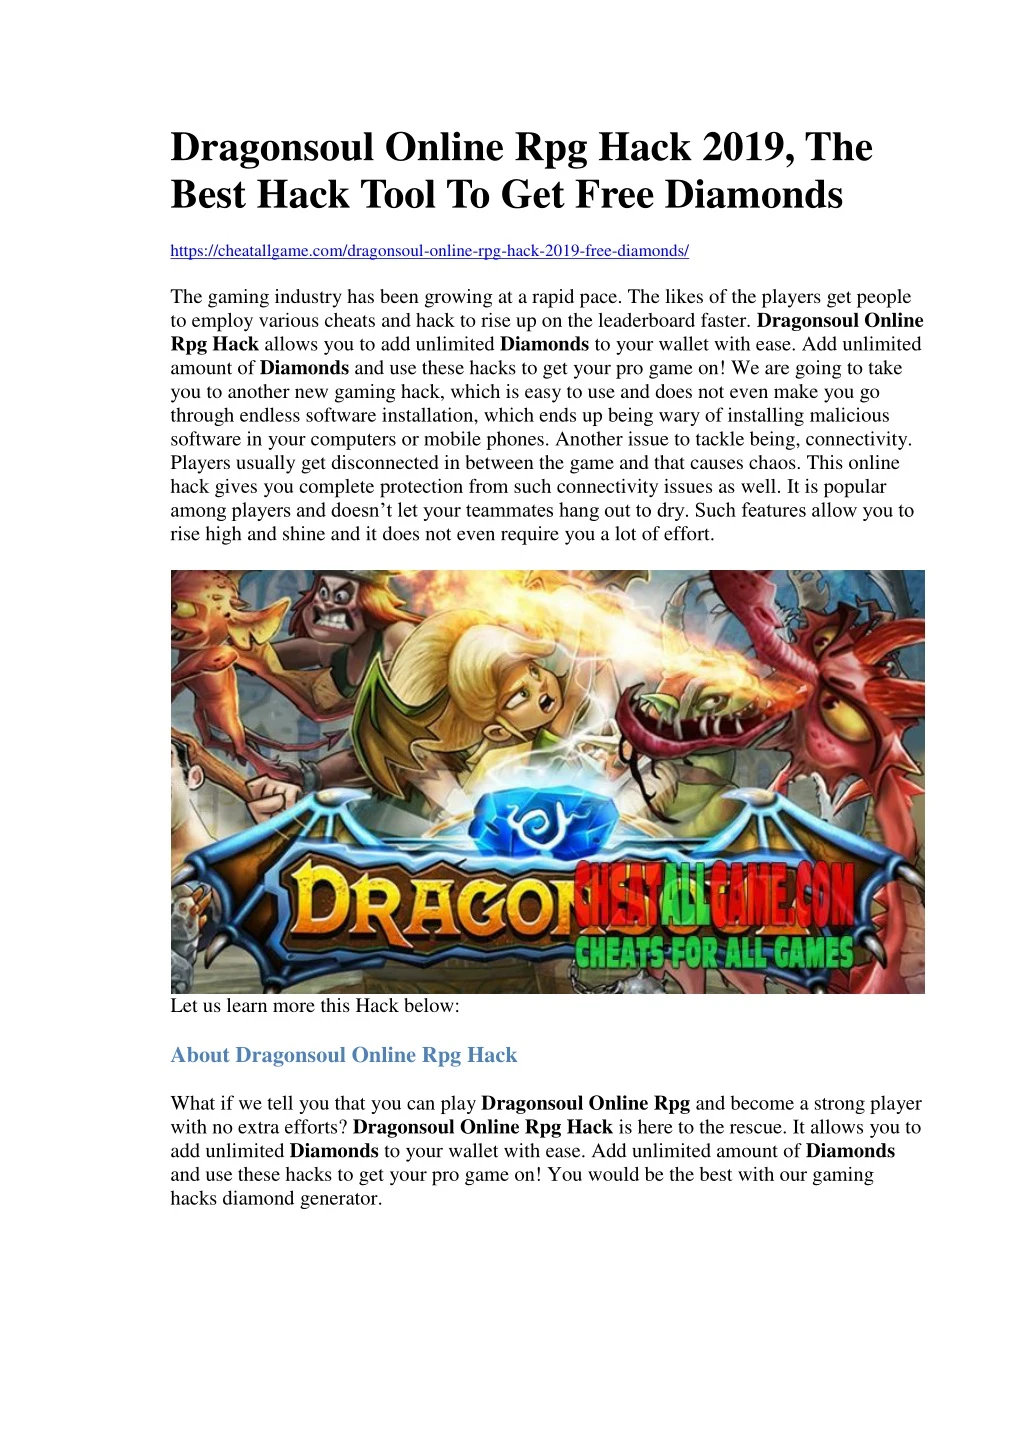 dragonsoul online rpg hack 2019 the best hack